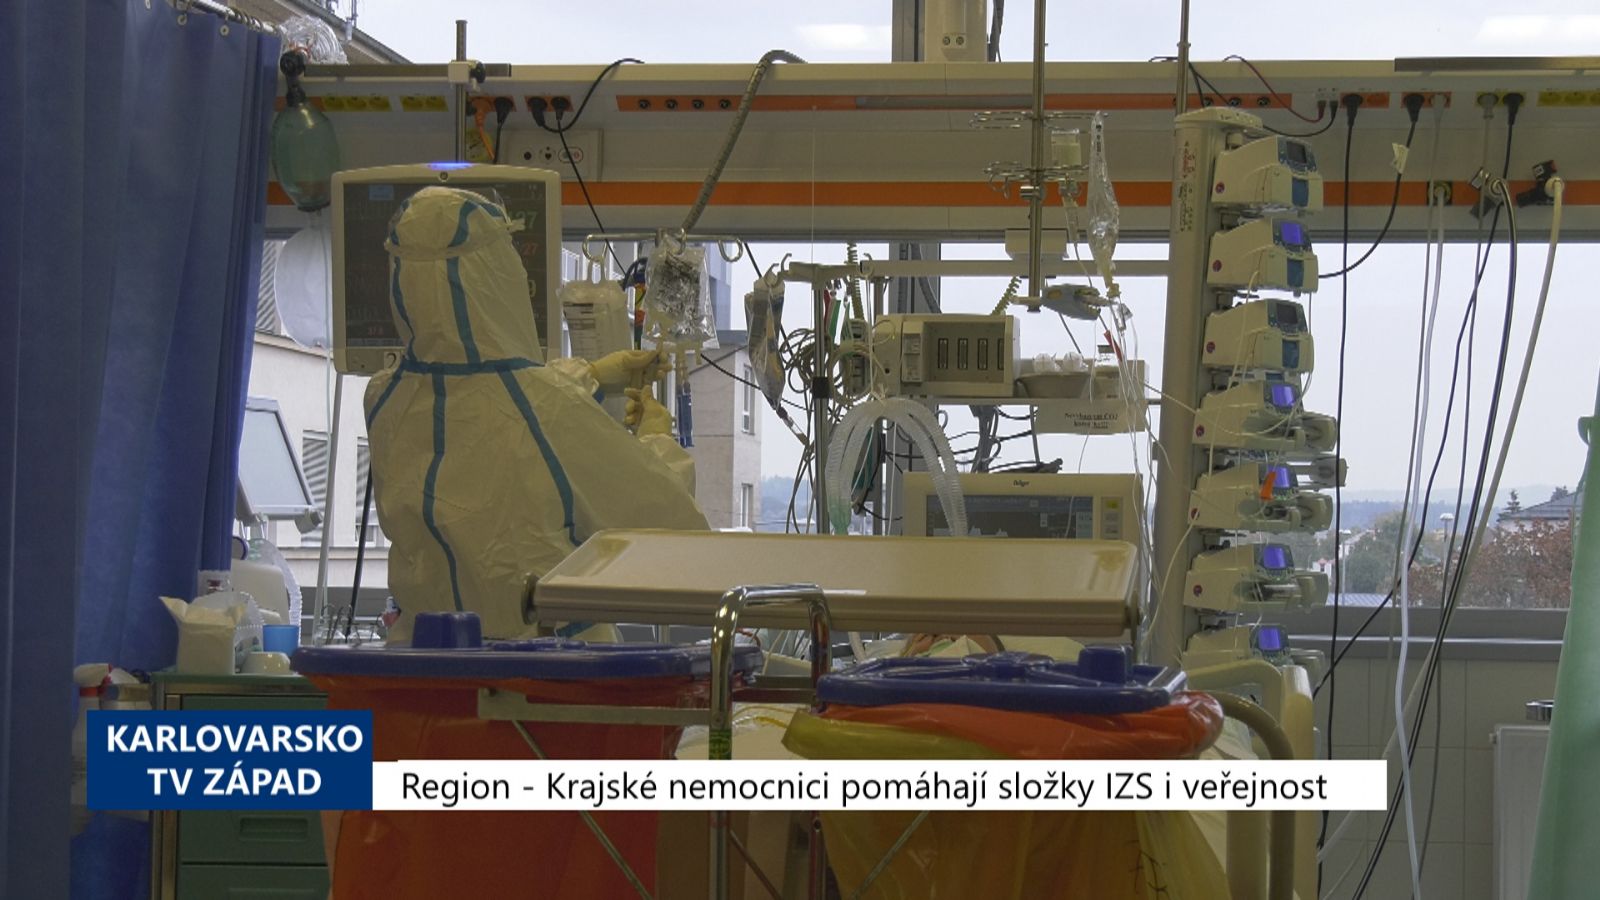 Region: Krajské nemocnici pomáhají složky IZS i veřejnost (TV Západ)